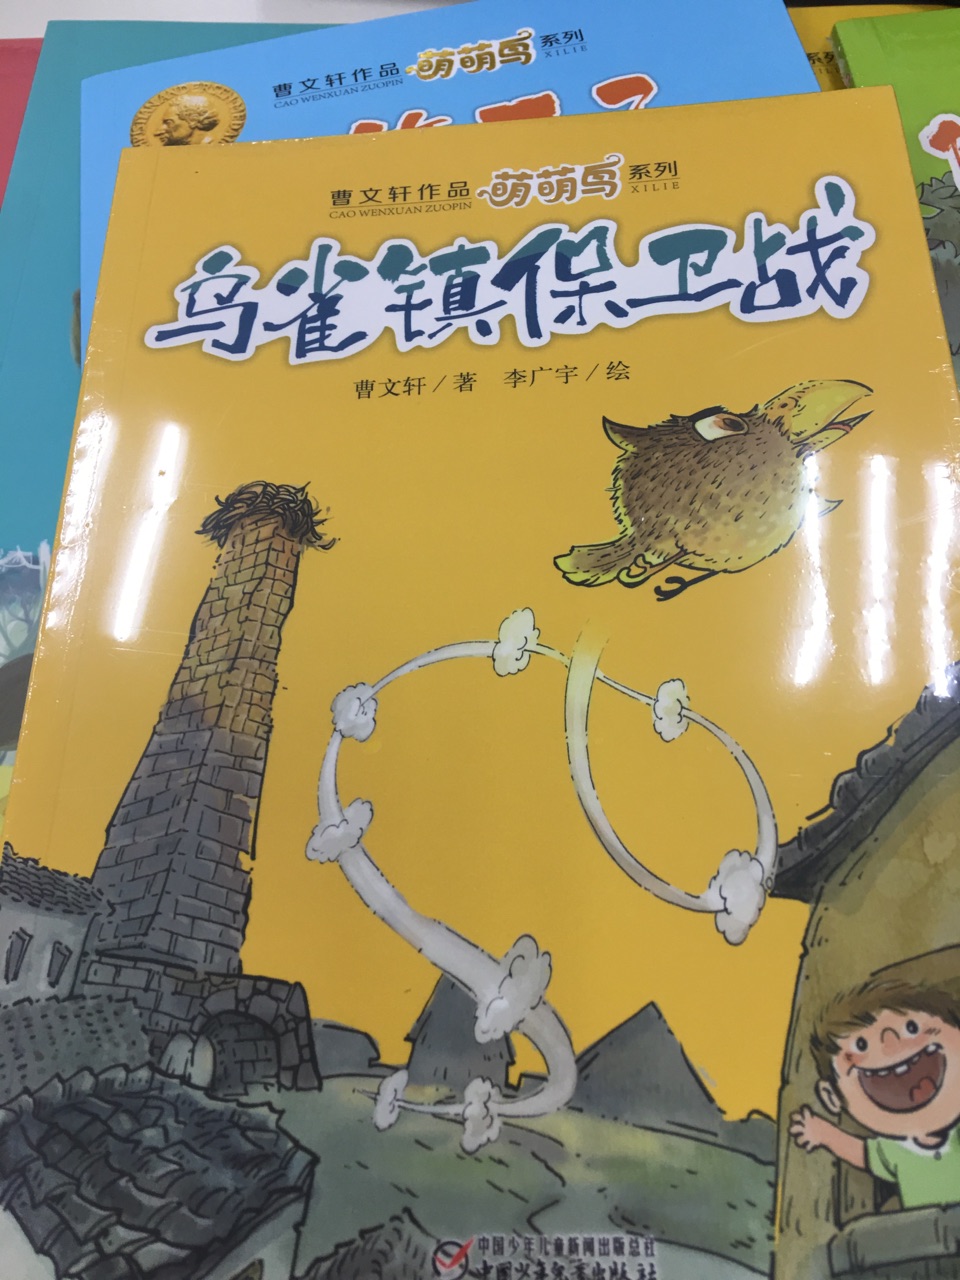 非常好，曹文轩专门给低年级孩子写的桥梁书，故事有趣，但是充满了哲理，形象生动，语言尤其精彩